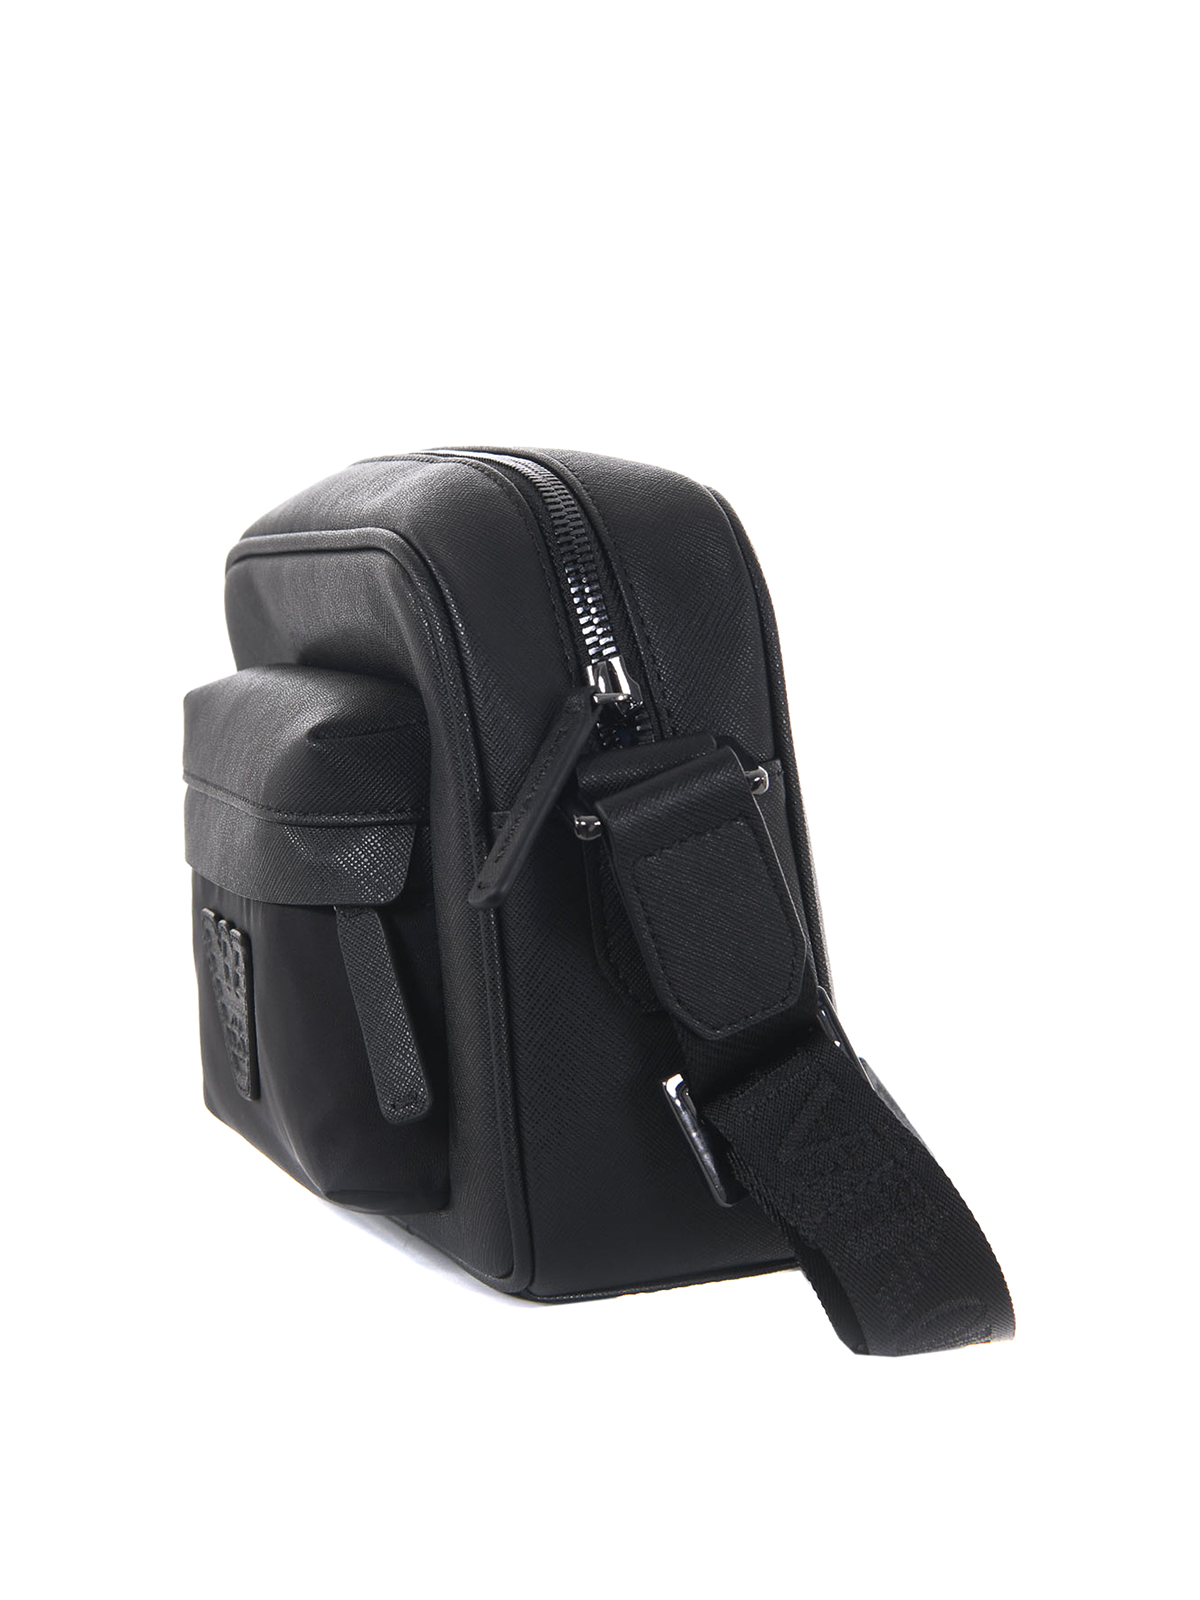 Emporio Armani Black Nylon Sling Bag